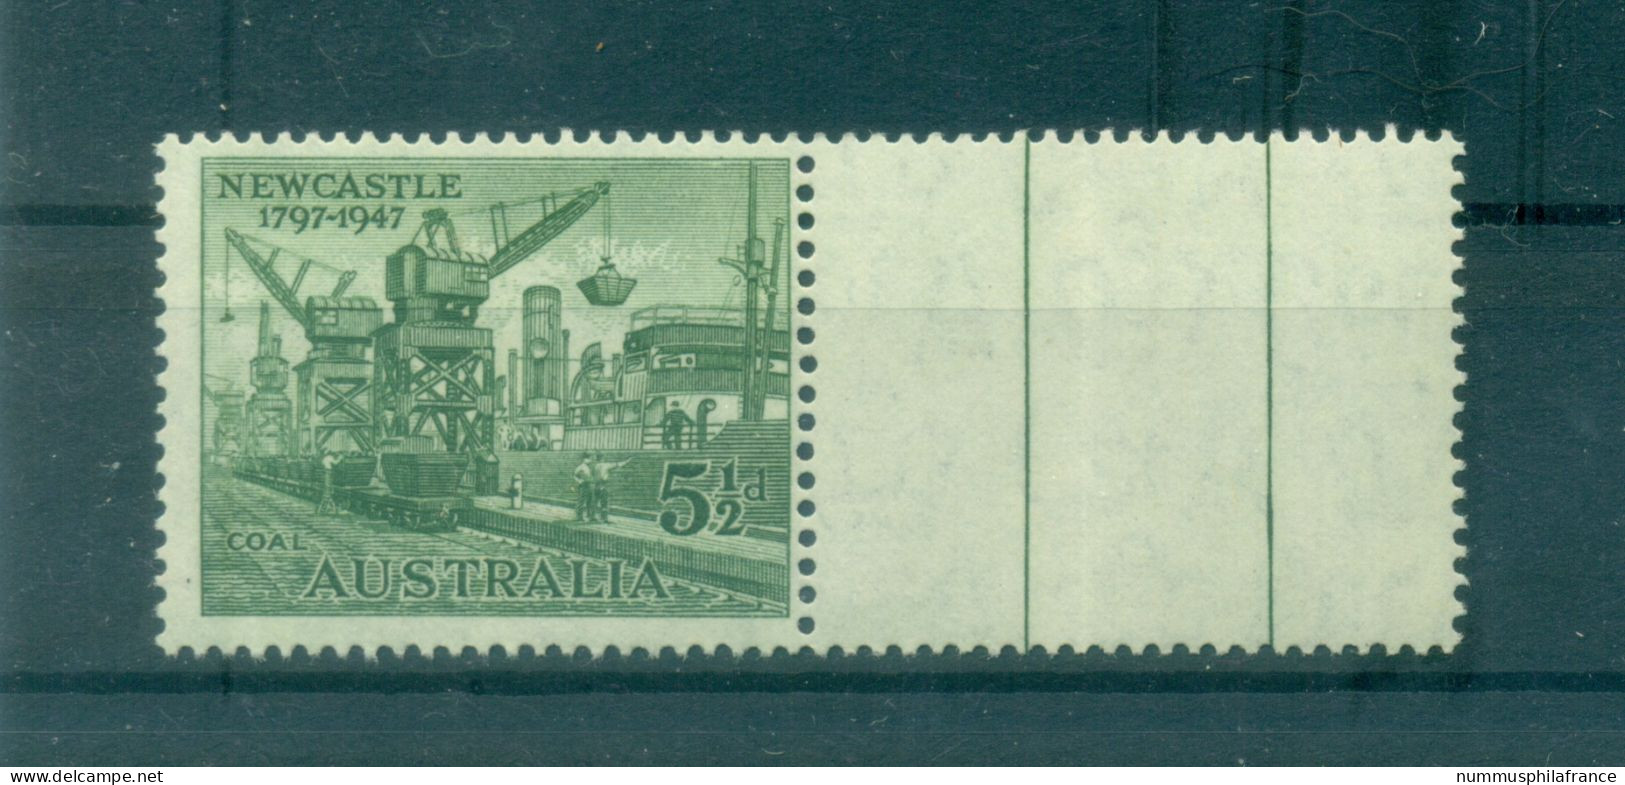 Australie 1947 - Y & T N. 158 - Newcastle (Michel N. 181) - Mint Stamps